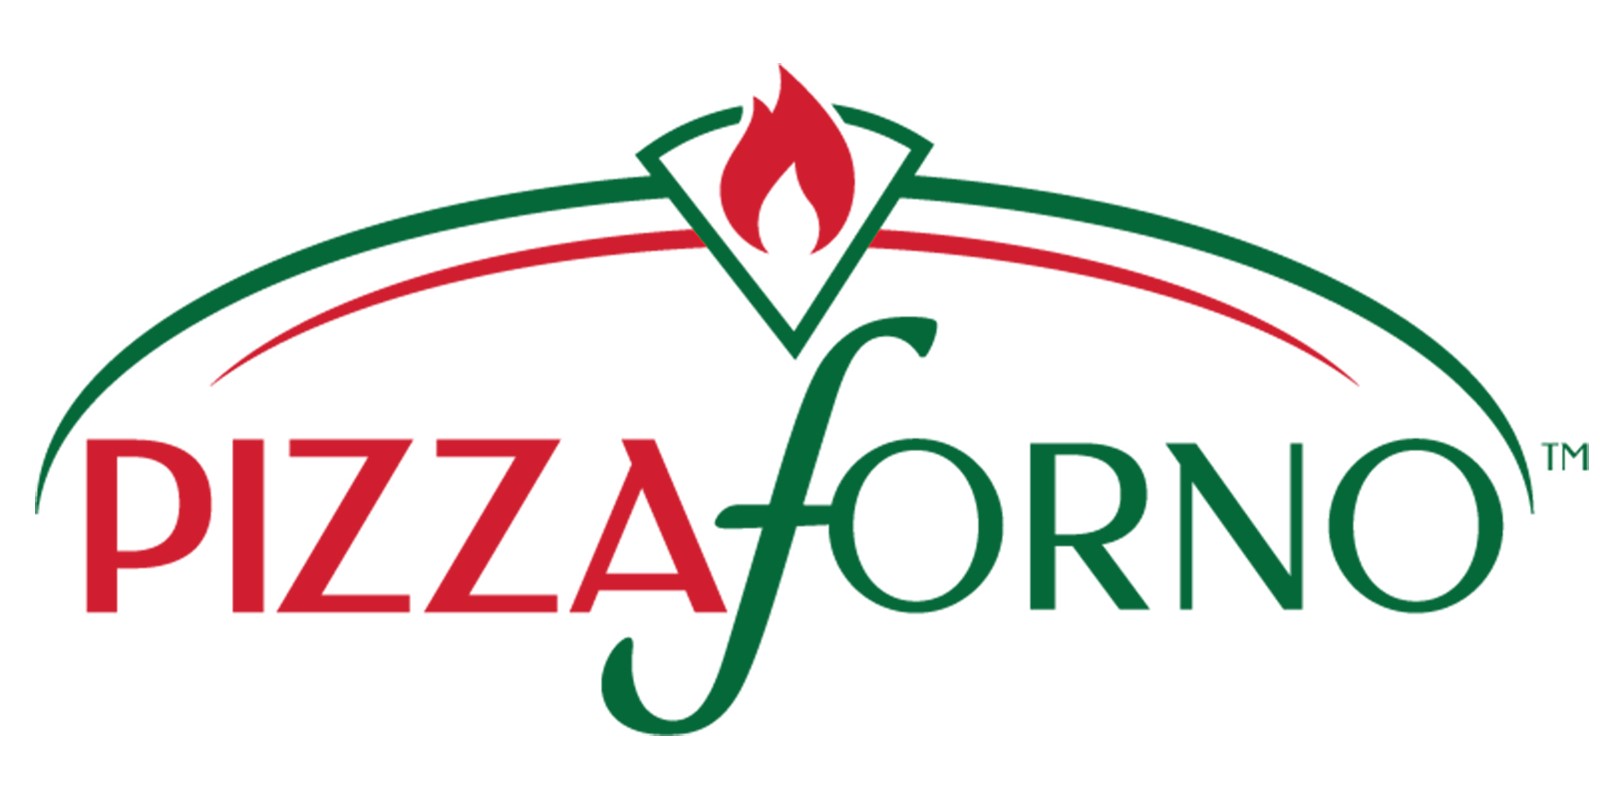 PizzaForno